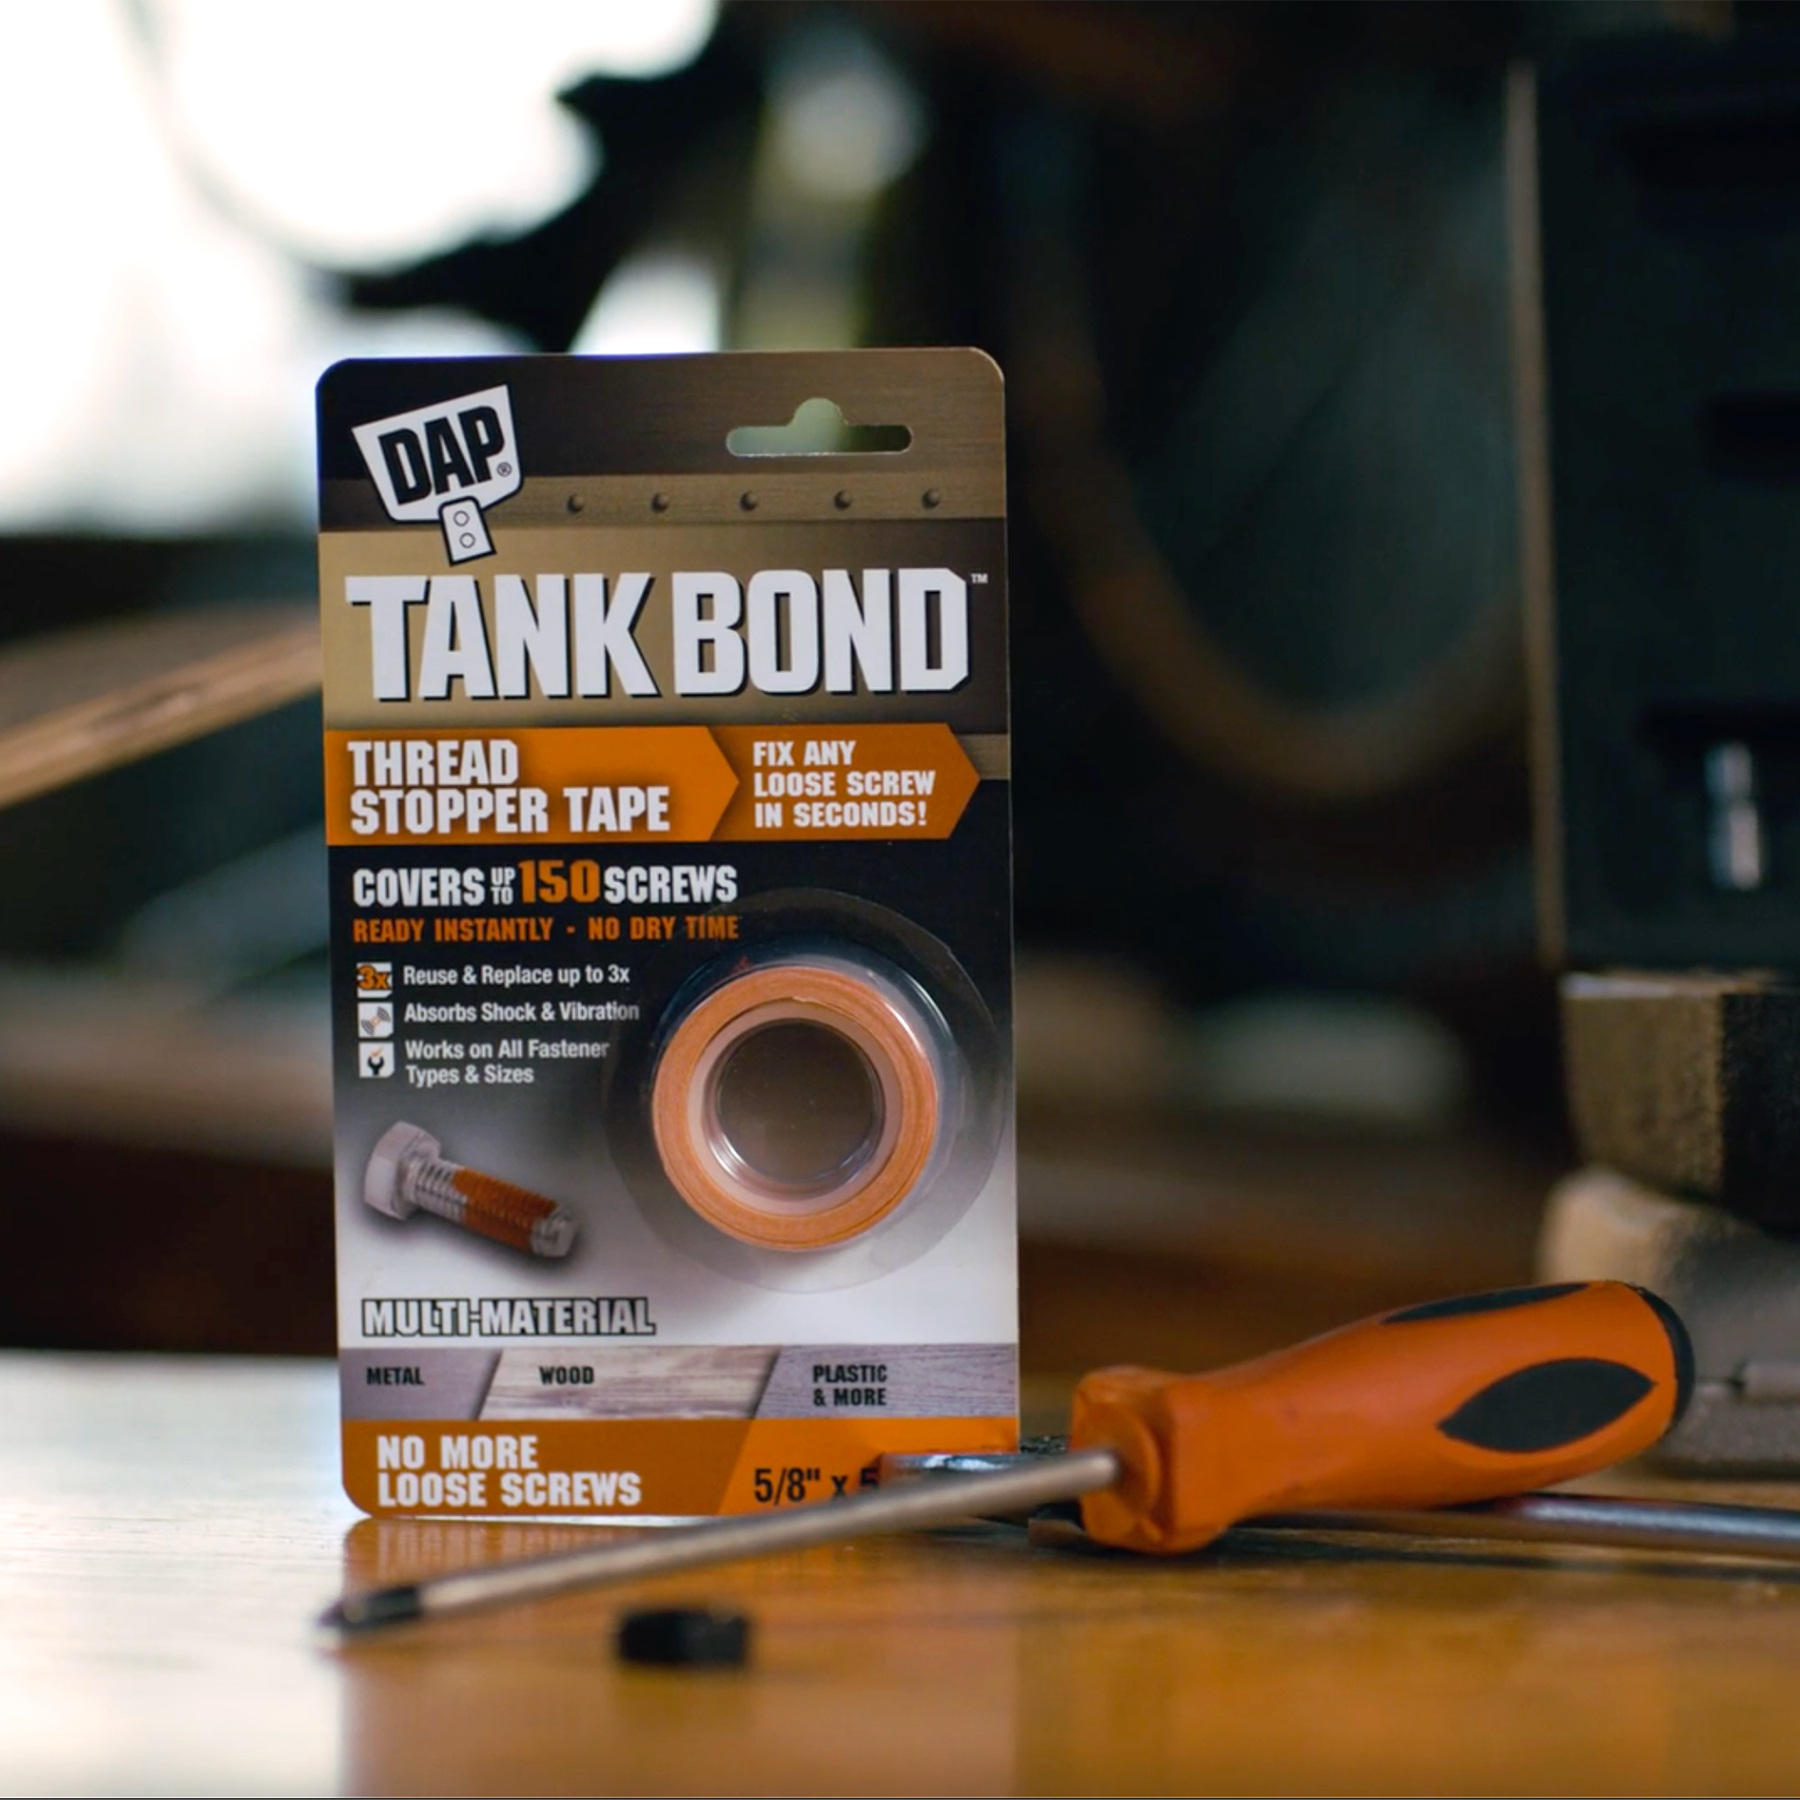 tank bond tape, threadstopper tape